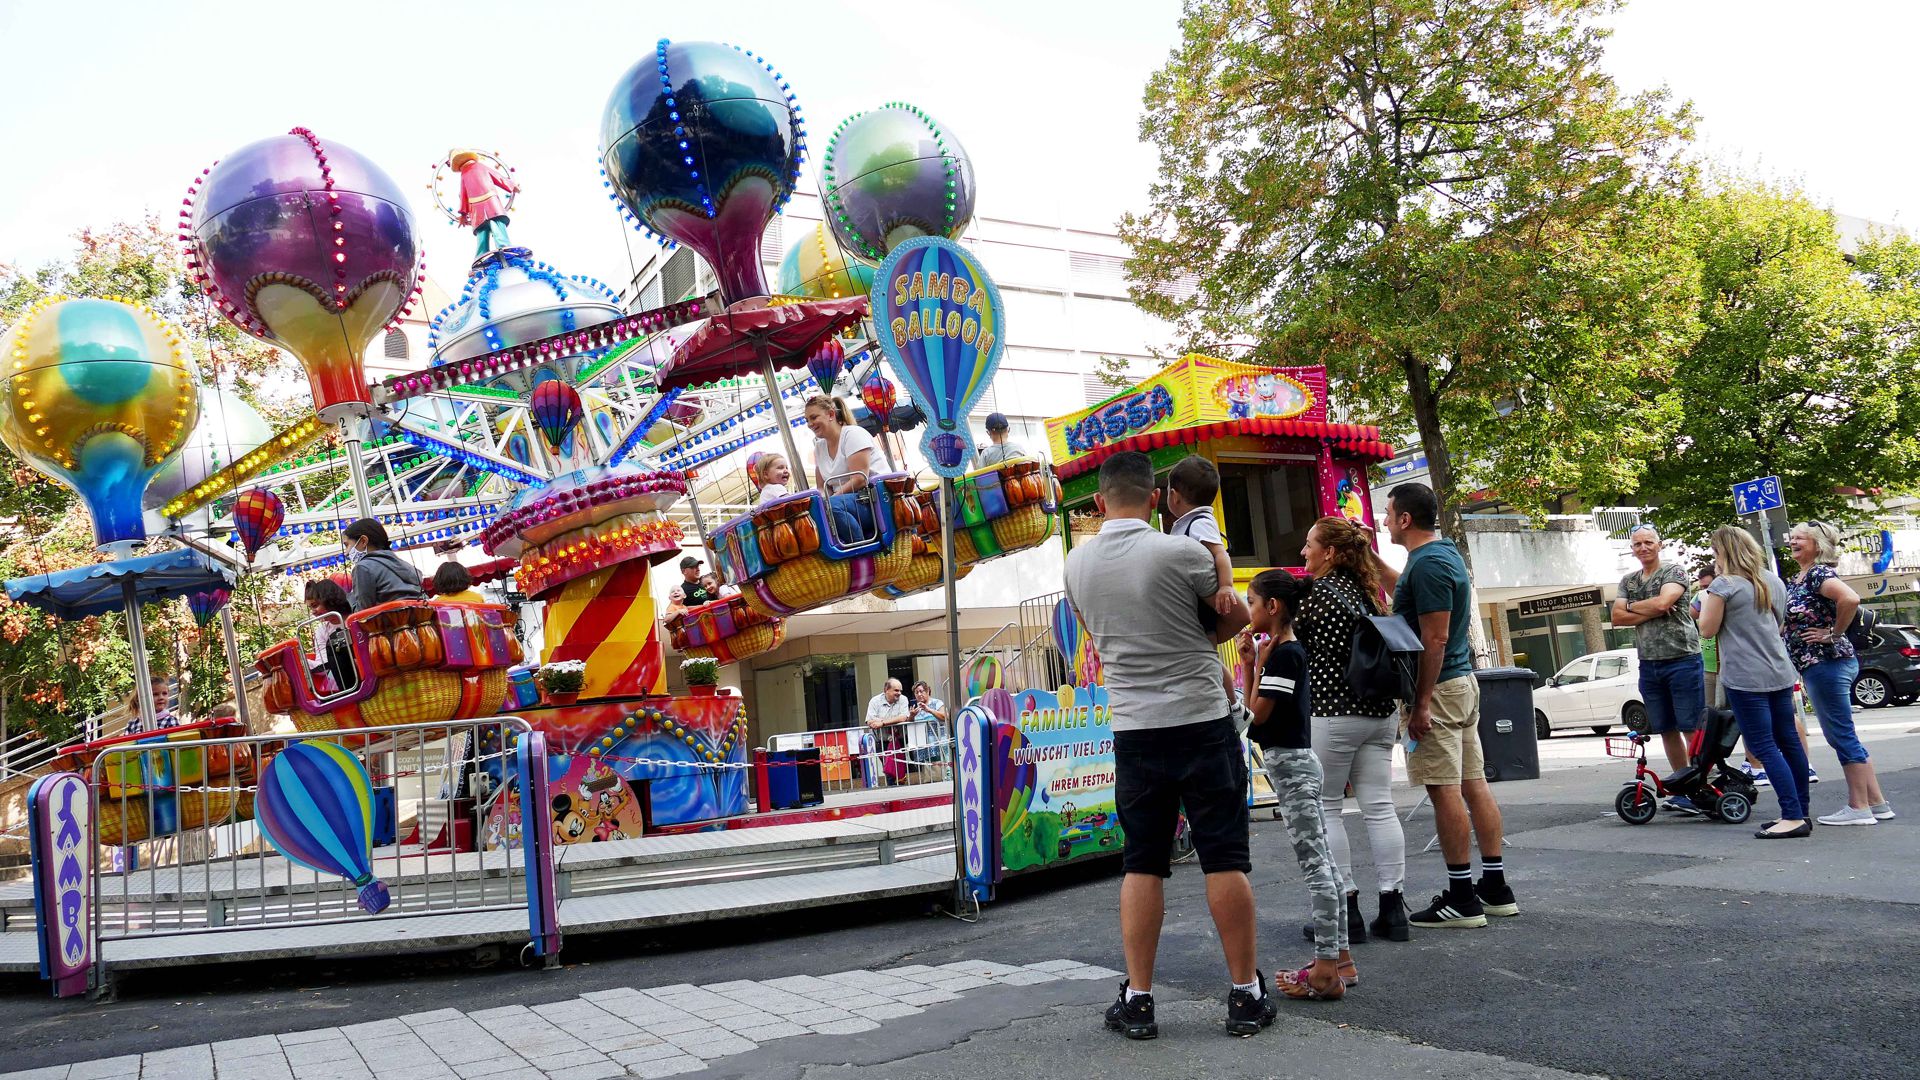 Mehrere Personen stehen vor einem Fahrgeschäft, das ein Karussell mit Heißluftballons ist.